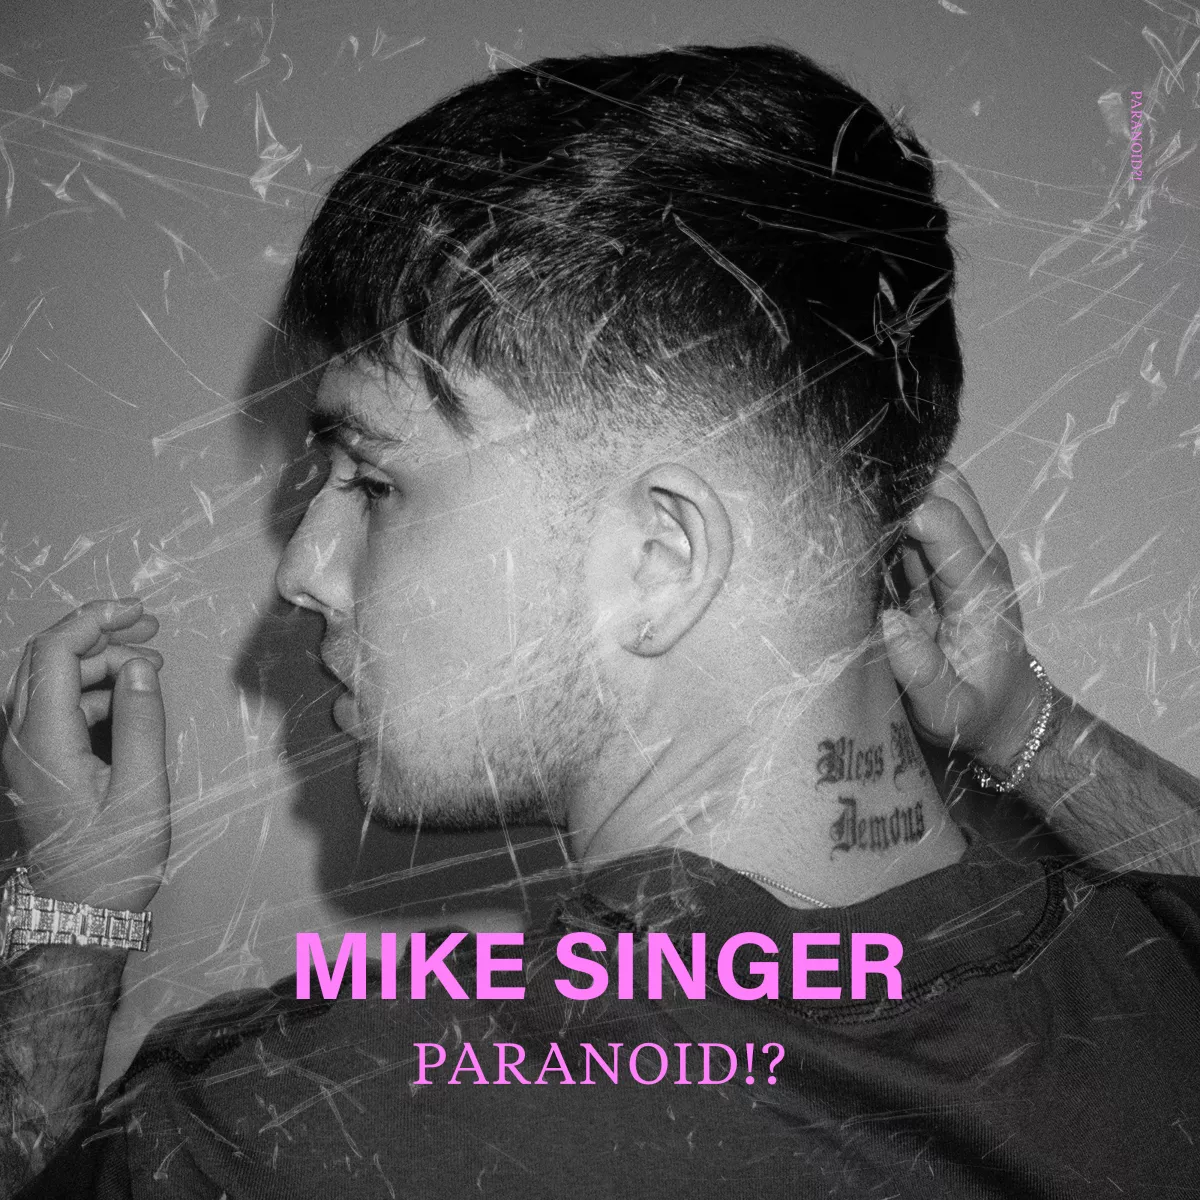 Mike Singer - "Paranoid!?"